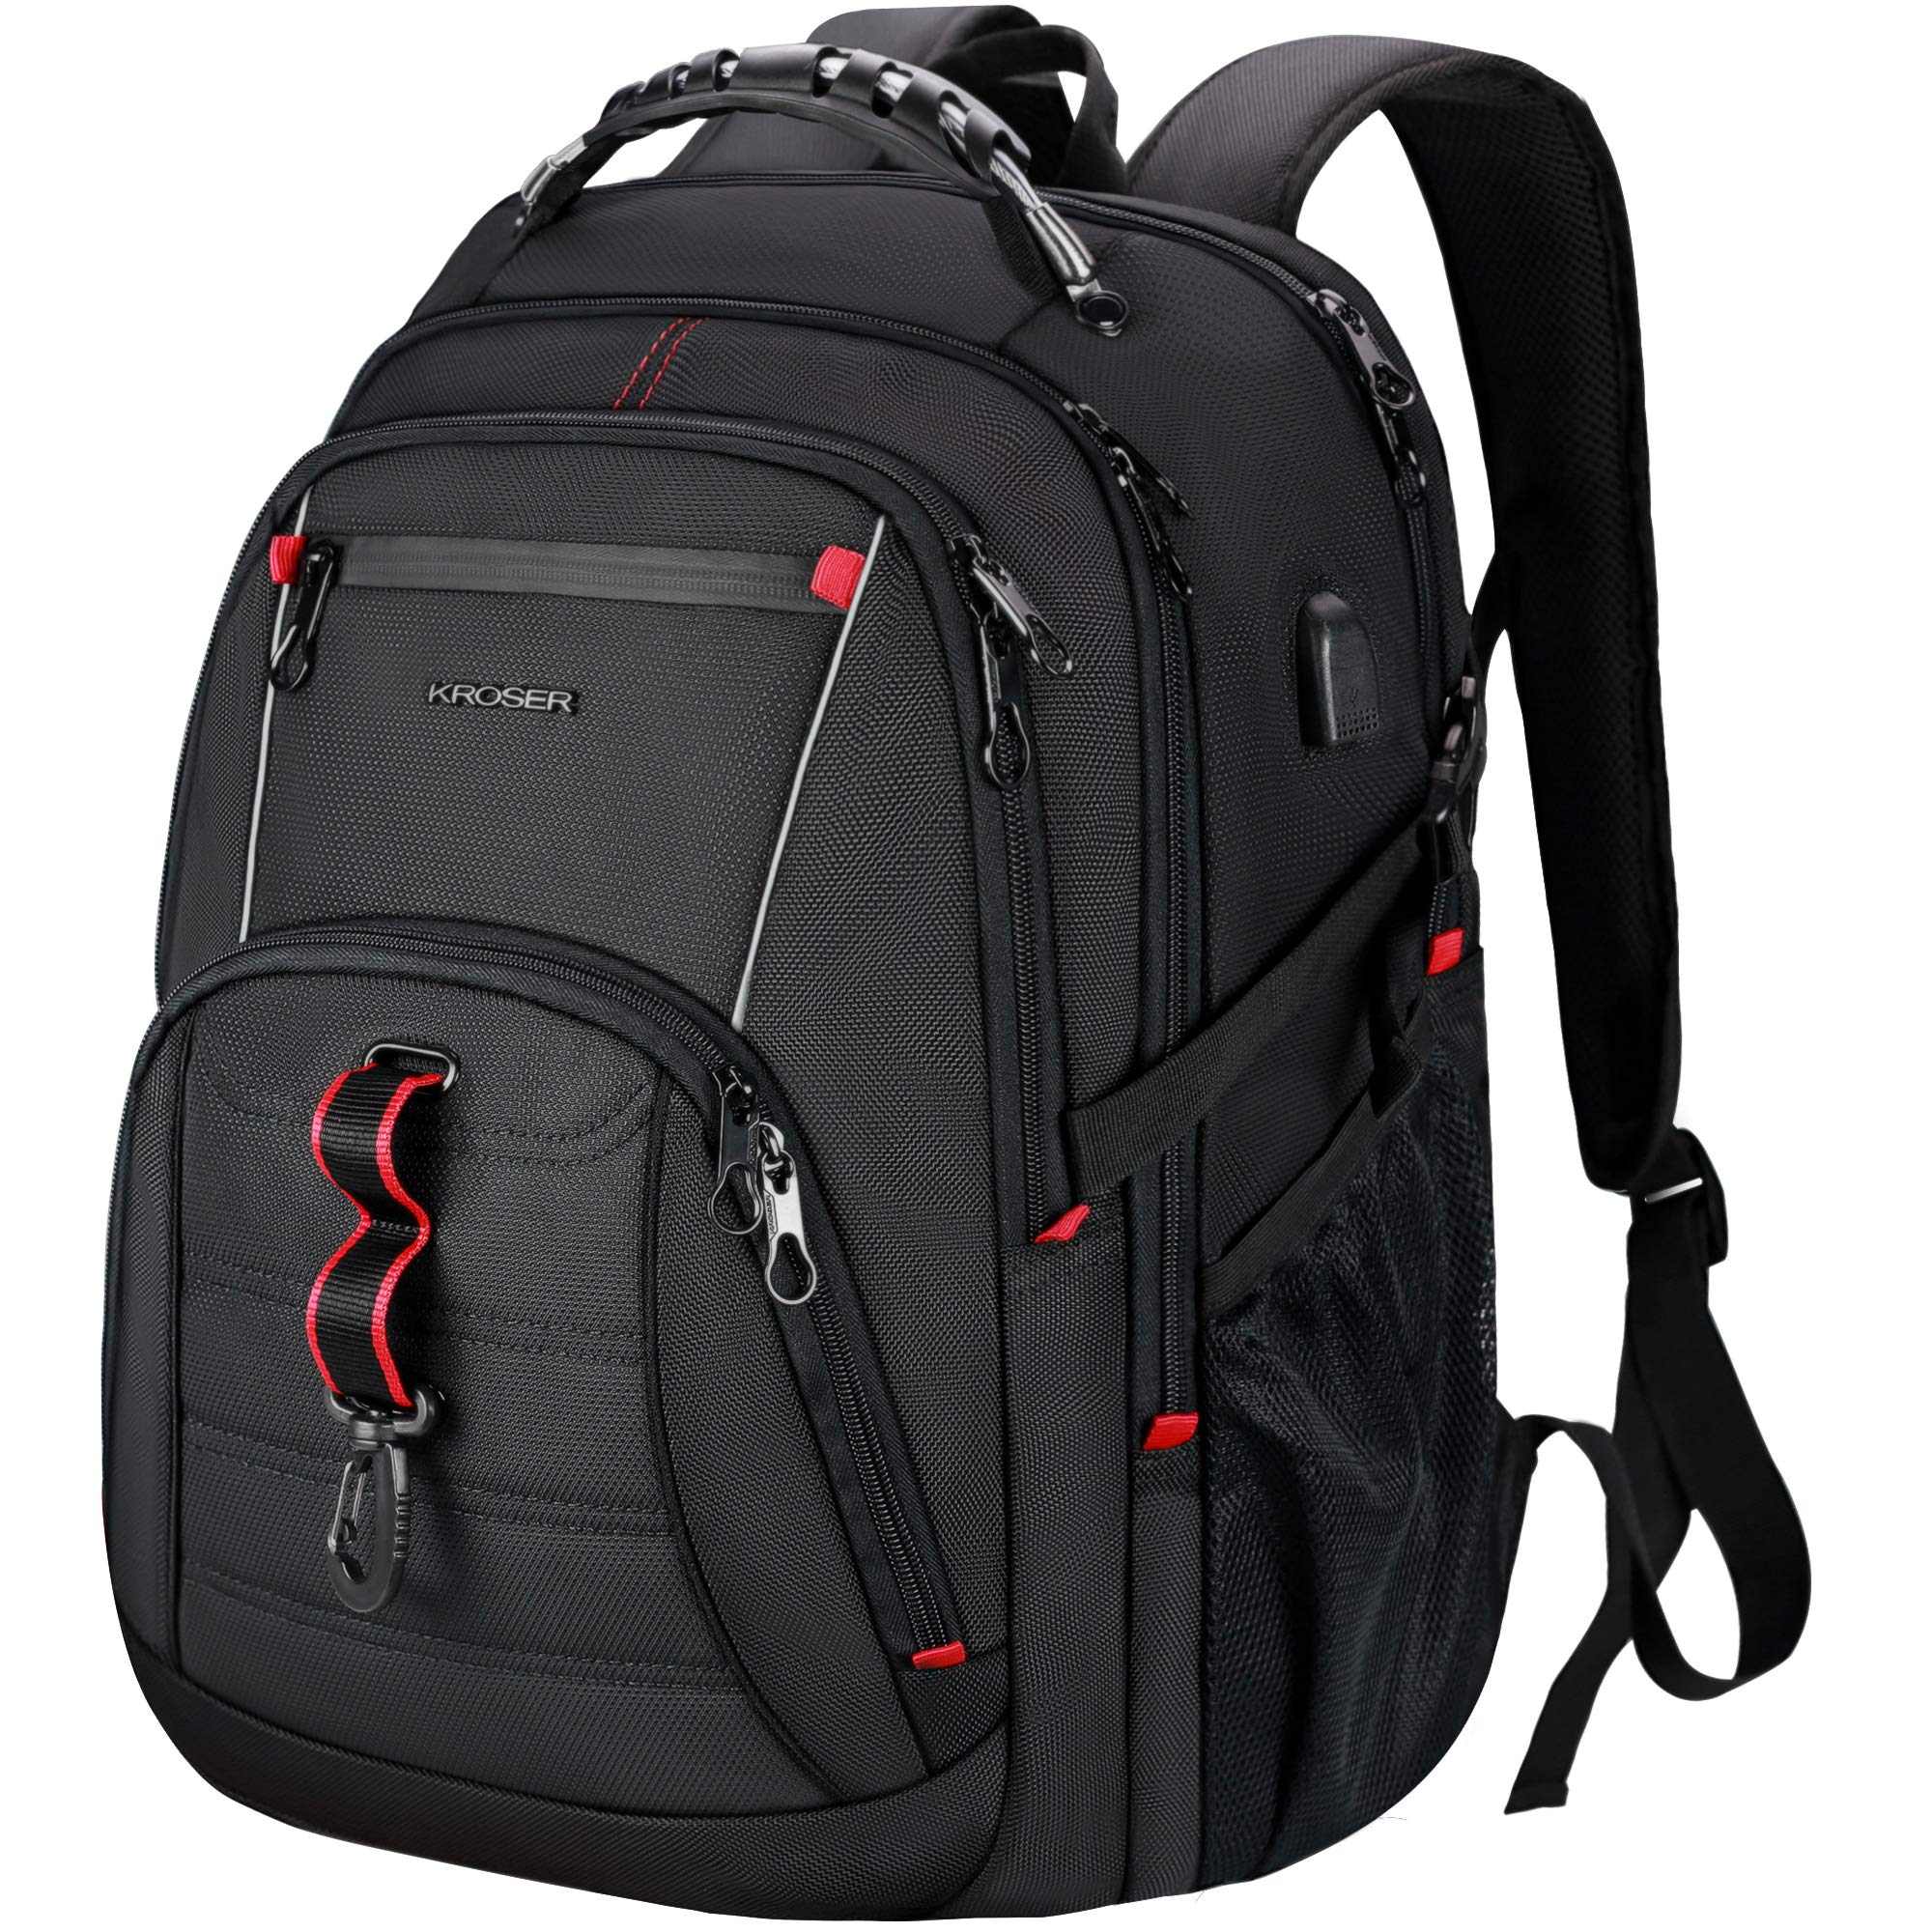 KROSER Travel Laptop Backpack 17.3 Inch Review - LightBagTravel.com